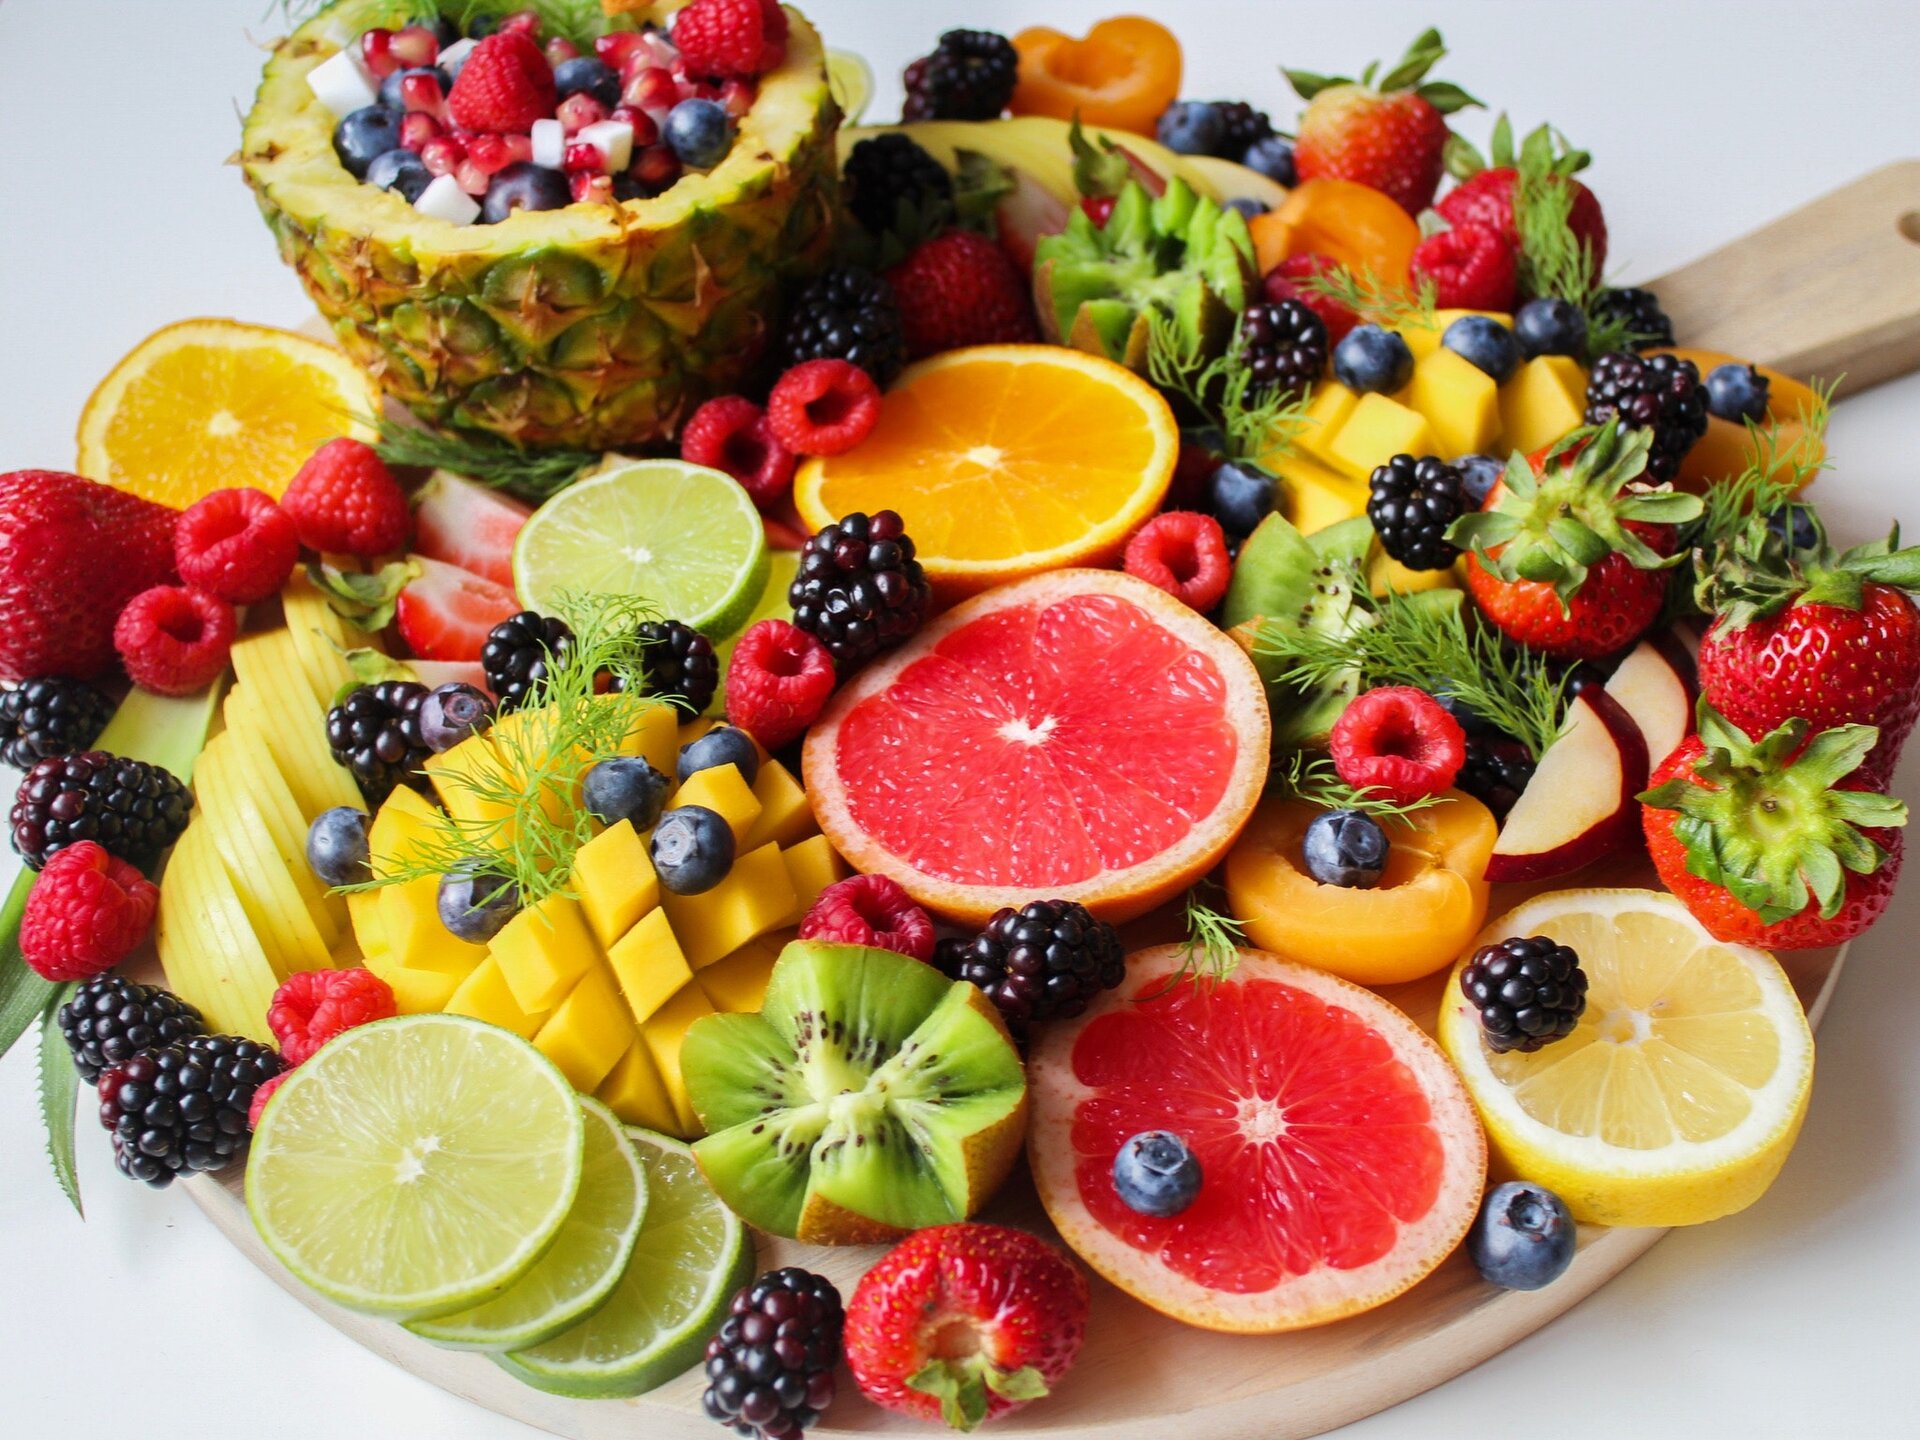 Zdjęcie [przedstawia deskę z wieloma owocami: pomarańczami, grejpfrutami, kiwi, brzoskwiniami, mango, malinami, jeżynami, ananasem, cytrynami.